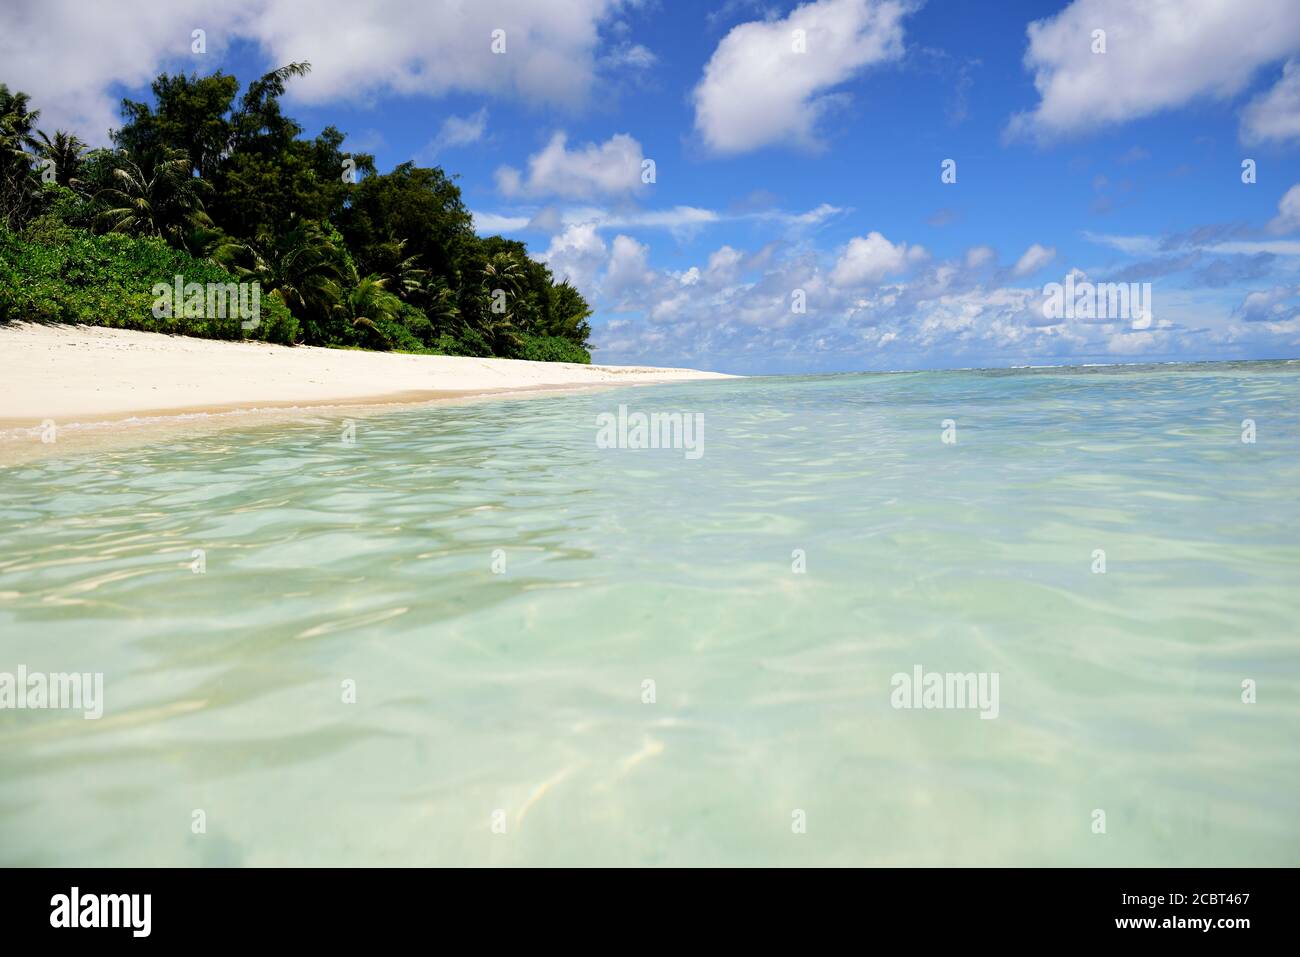 Spiaggia sabbiosa tropicale deserta con palme da cocco e acque blu chiare a Guam, Micronesia Foto Stock